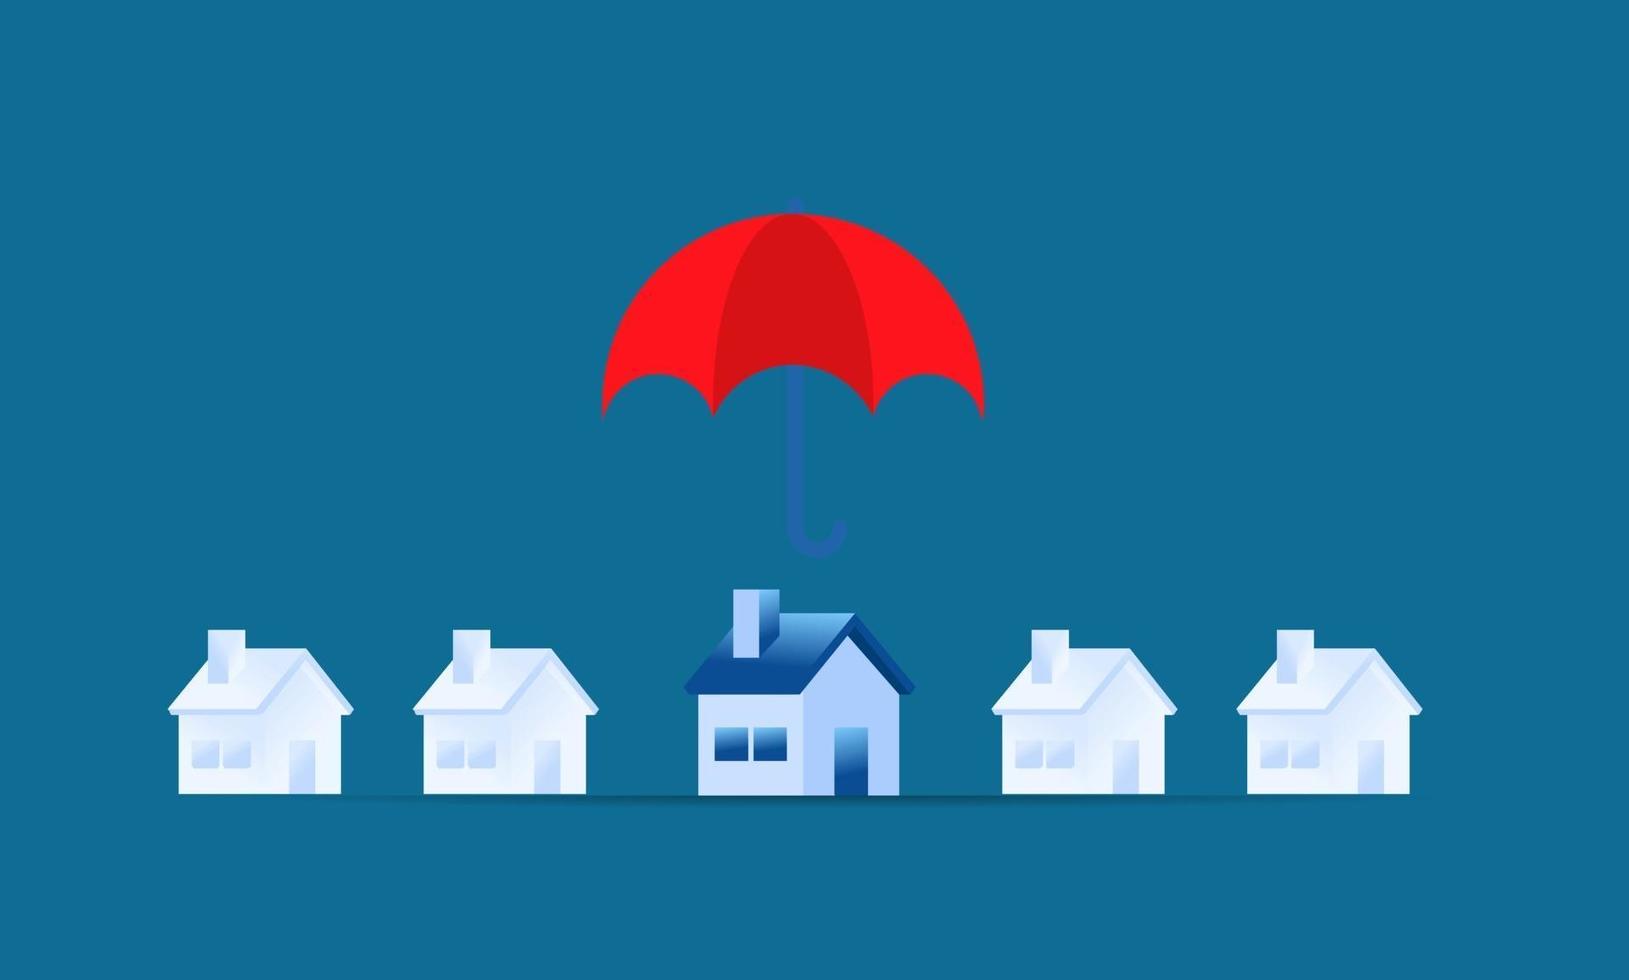 einfache Versicherungsillustration Hausschutz große Hand, die roten Regenschirm für den Schutz des winzigen Hauses hält vektor